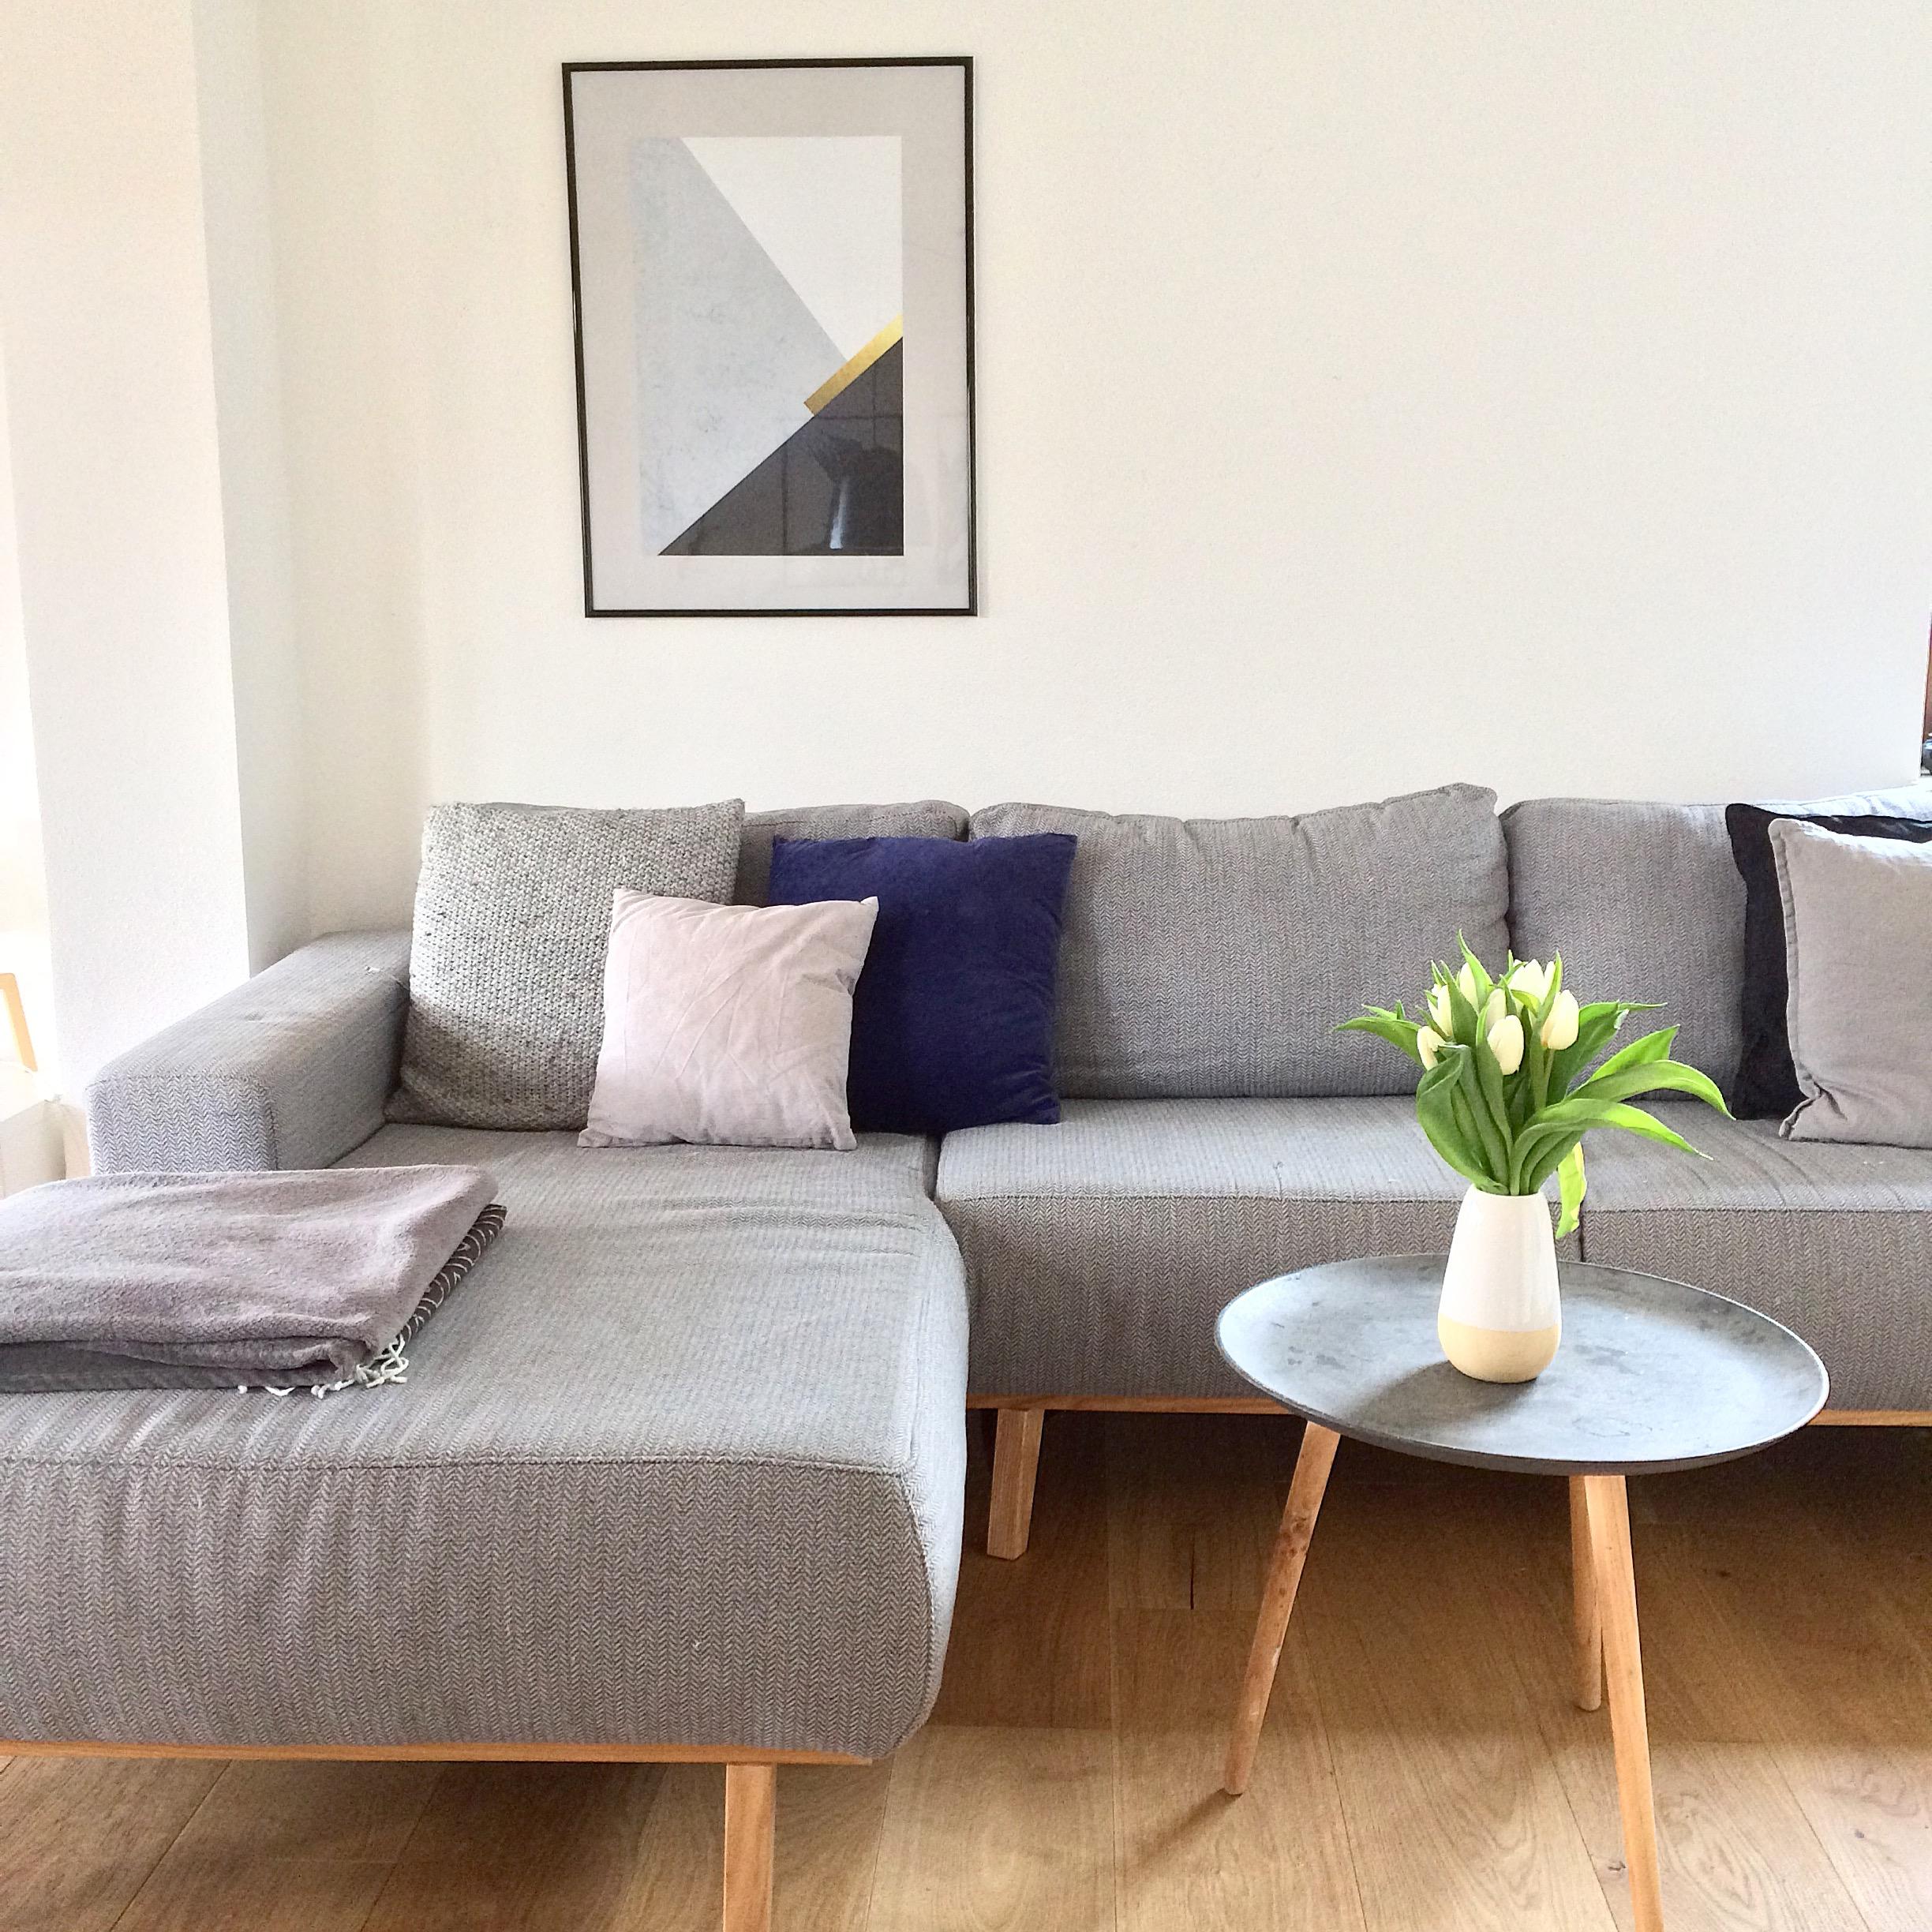 #blumen #tulpen #poster #bild #sofa #couch #grauessofa #grau #scandistyle #scandinavian #parkett #couchtisch #wohnzimmer